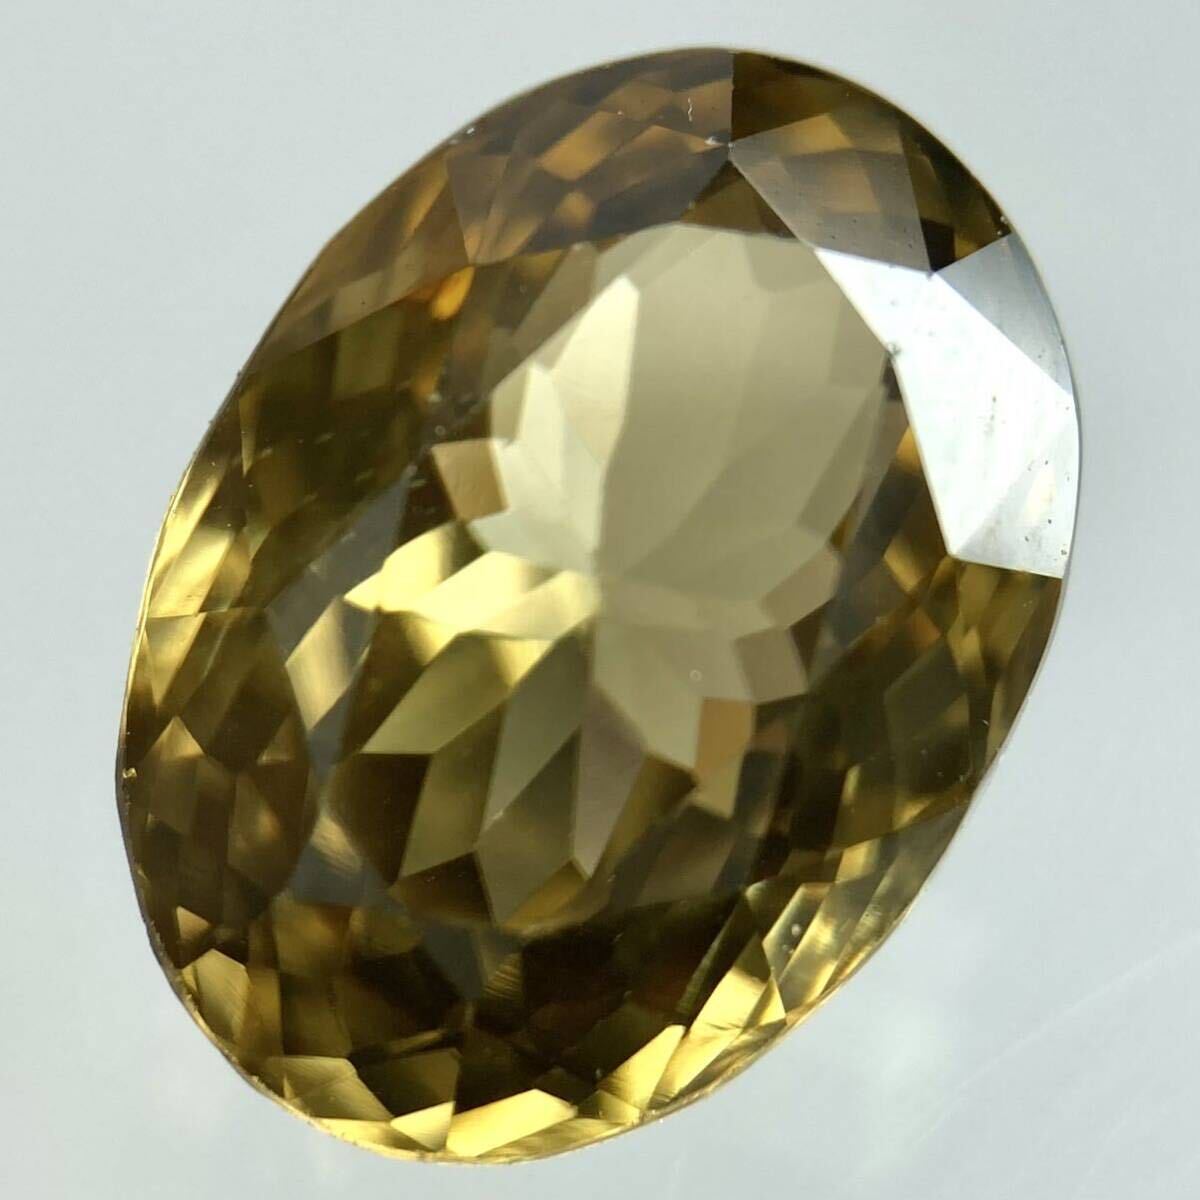 〔 природный  ... около 3.816ct〕a около 10.47×8.02mm ... ... камень  zircon драгоценный камень   ... 